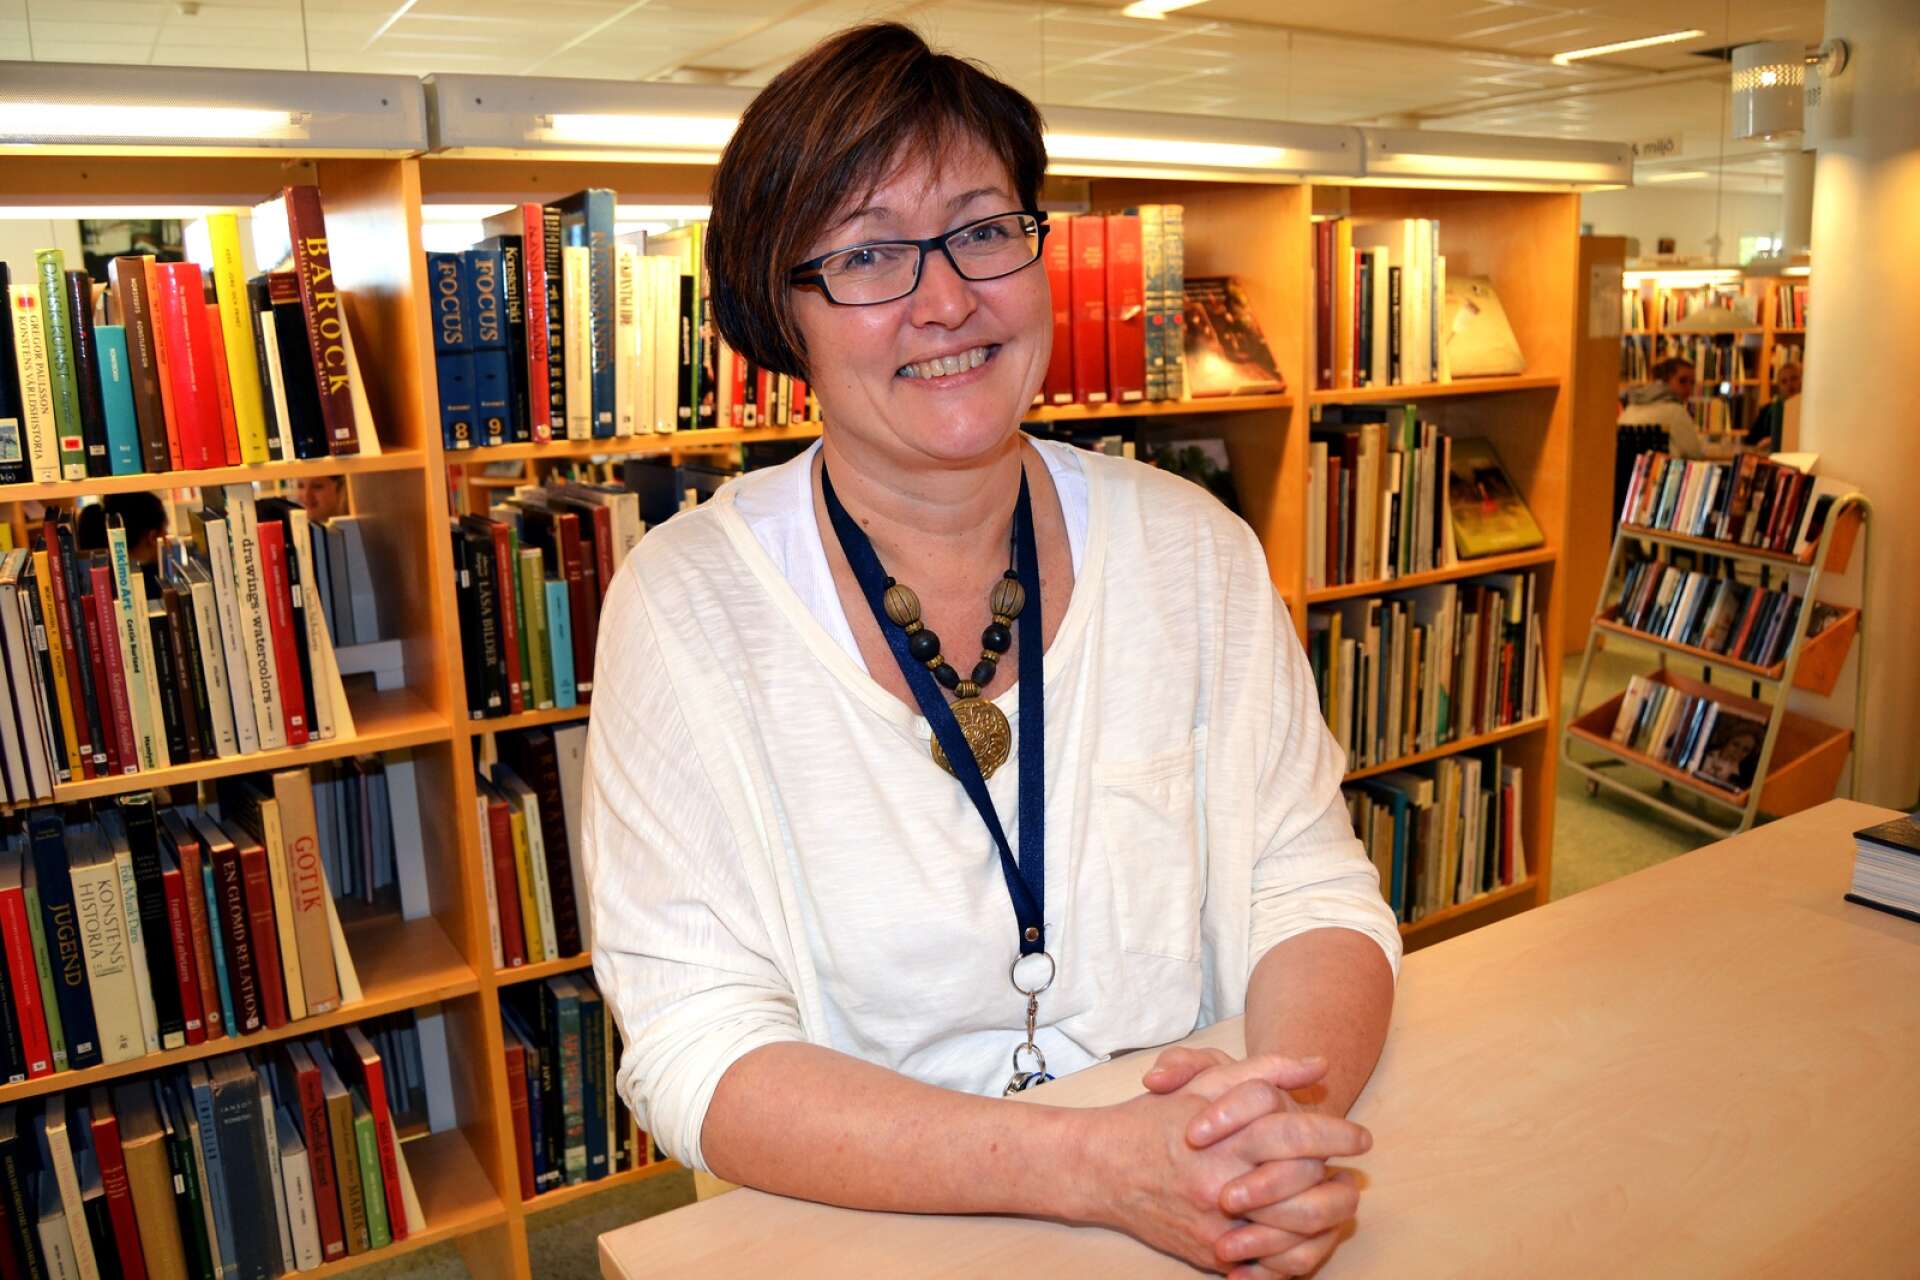 ”Tilldelningen av medel till biblioteken är lågt prioriterade i de flesta kommuner och av de flesta politiska partier. Jag tycker det är sorgligt”,  säger bibliotekschefen Ulla-Carin Stenberg i en intervju i tidningen Vi.